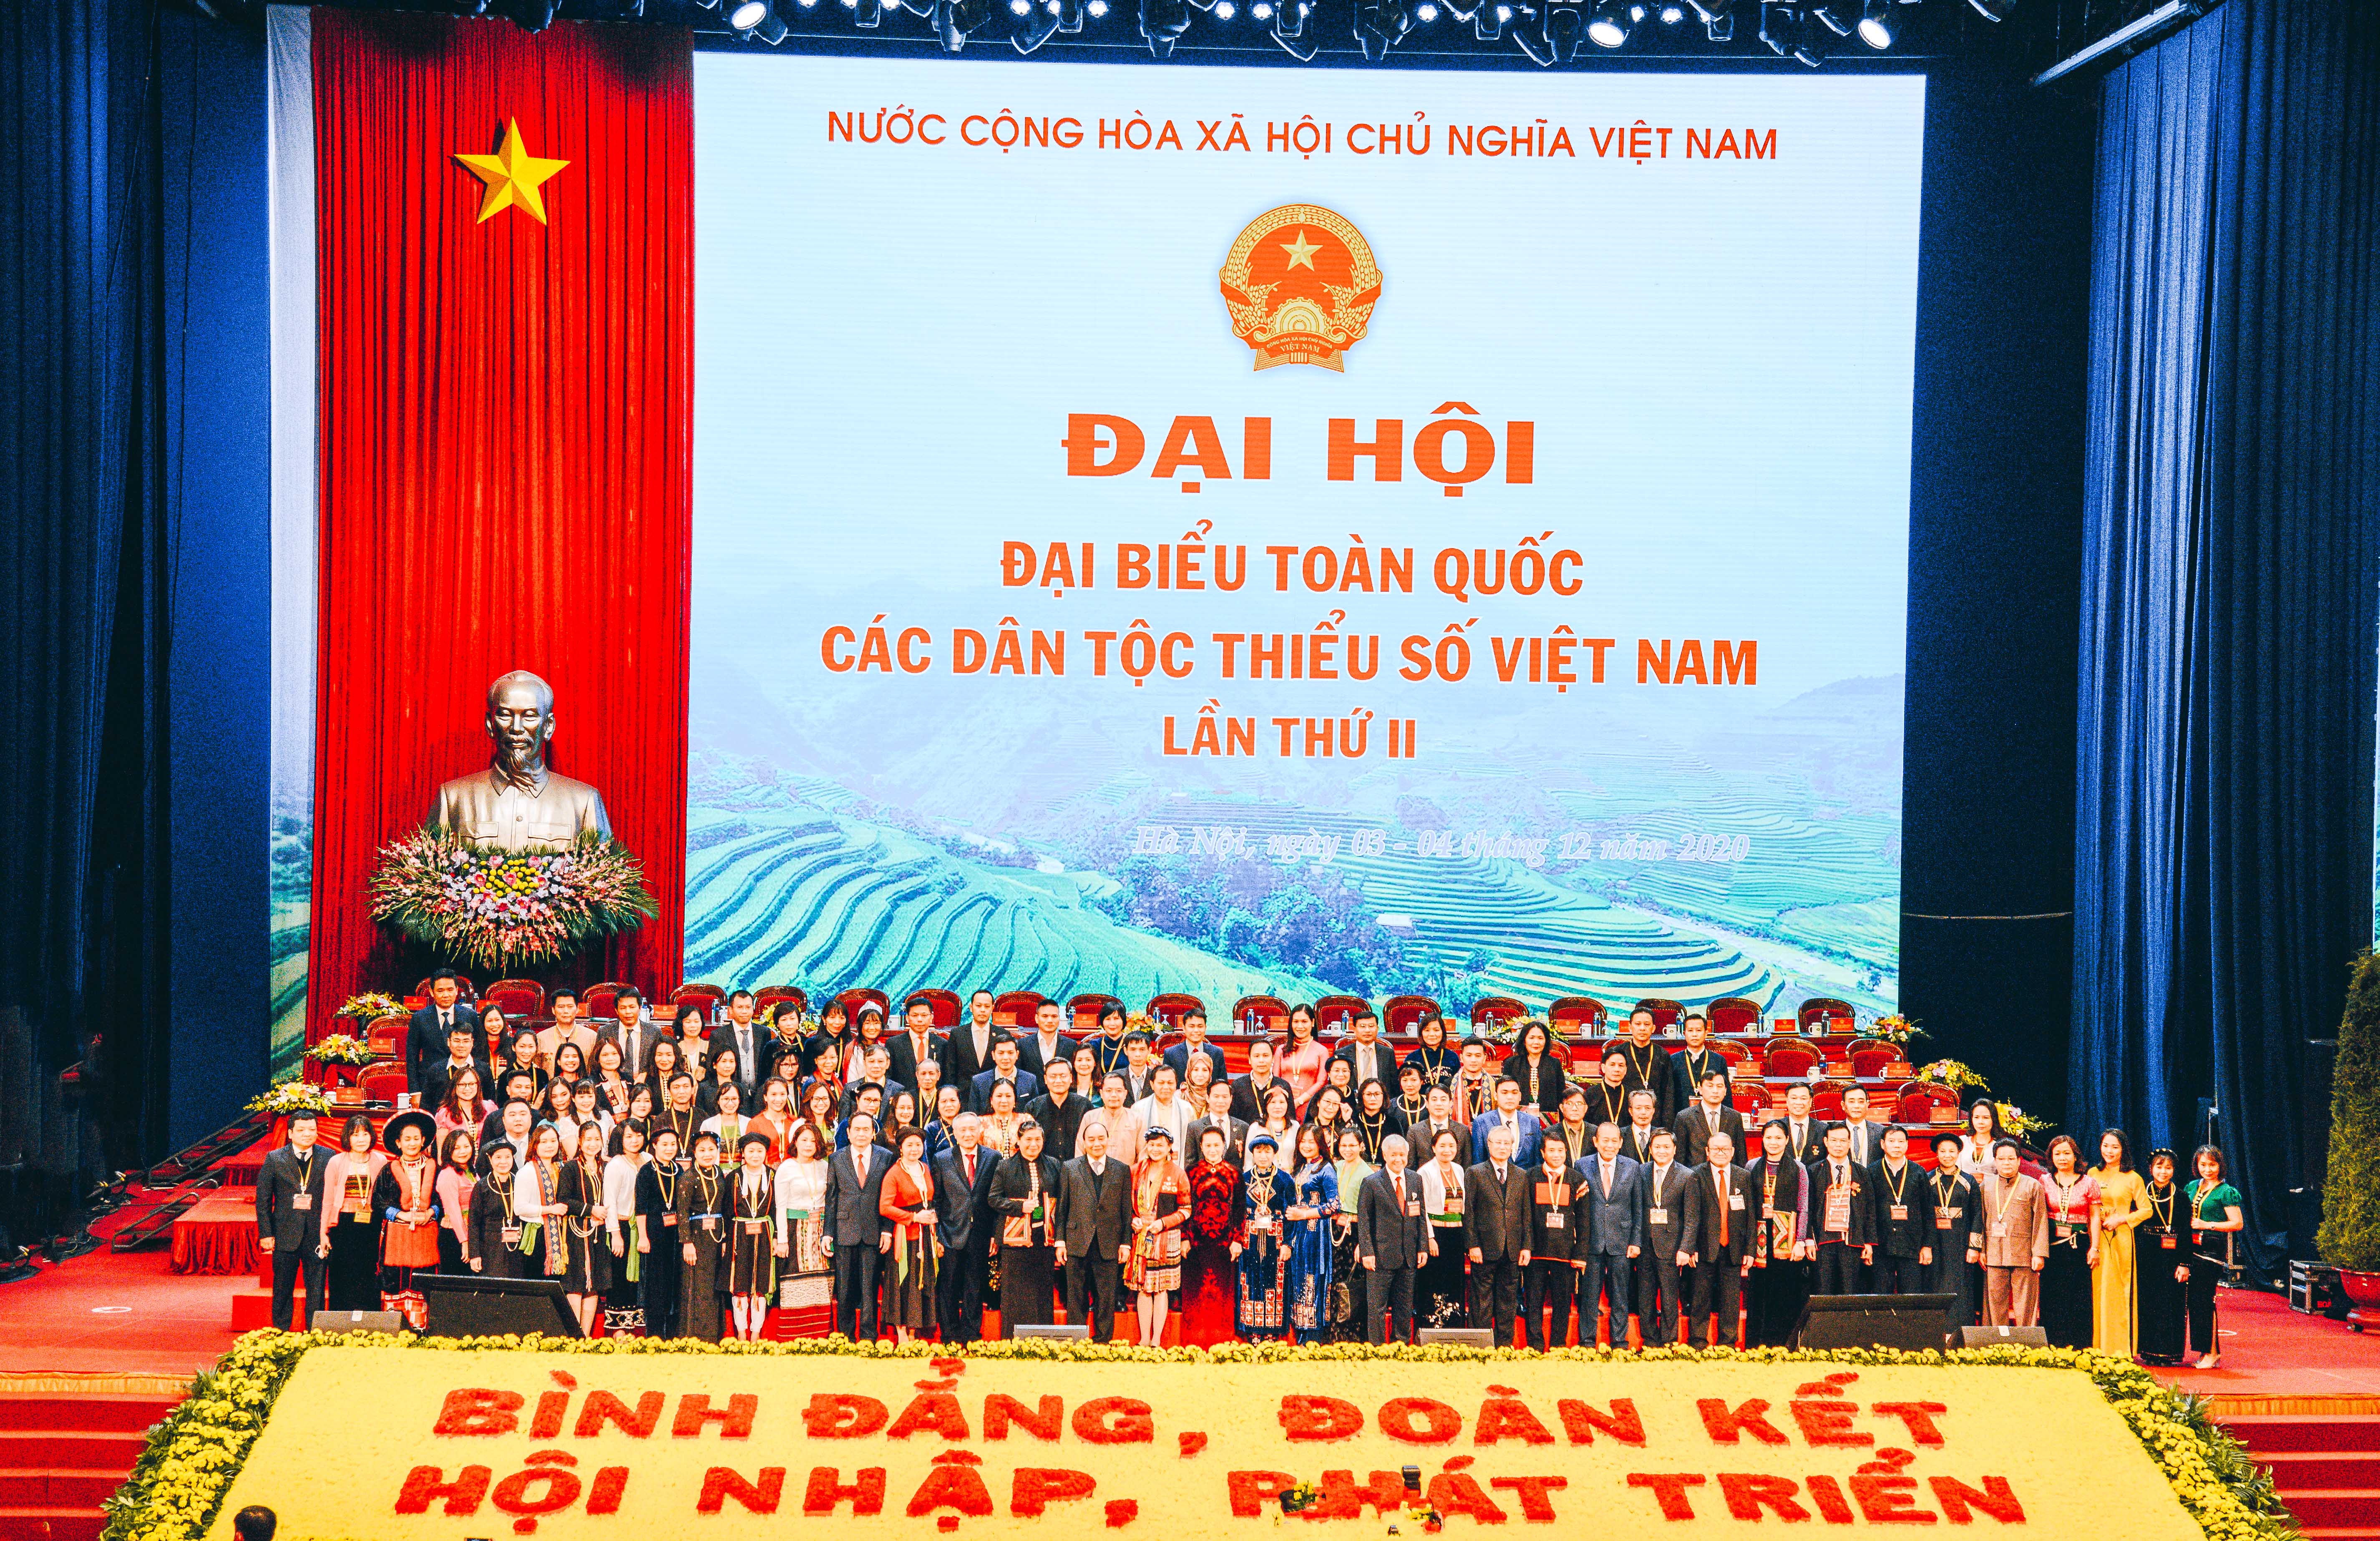 Viecombank đồng hành cùng Đại hội Đại biểu toàn quốc các dân tộc thiểu số Việt Nam lần thứ II năm 2020